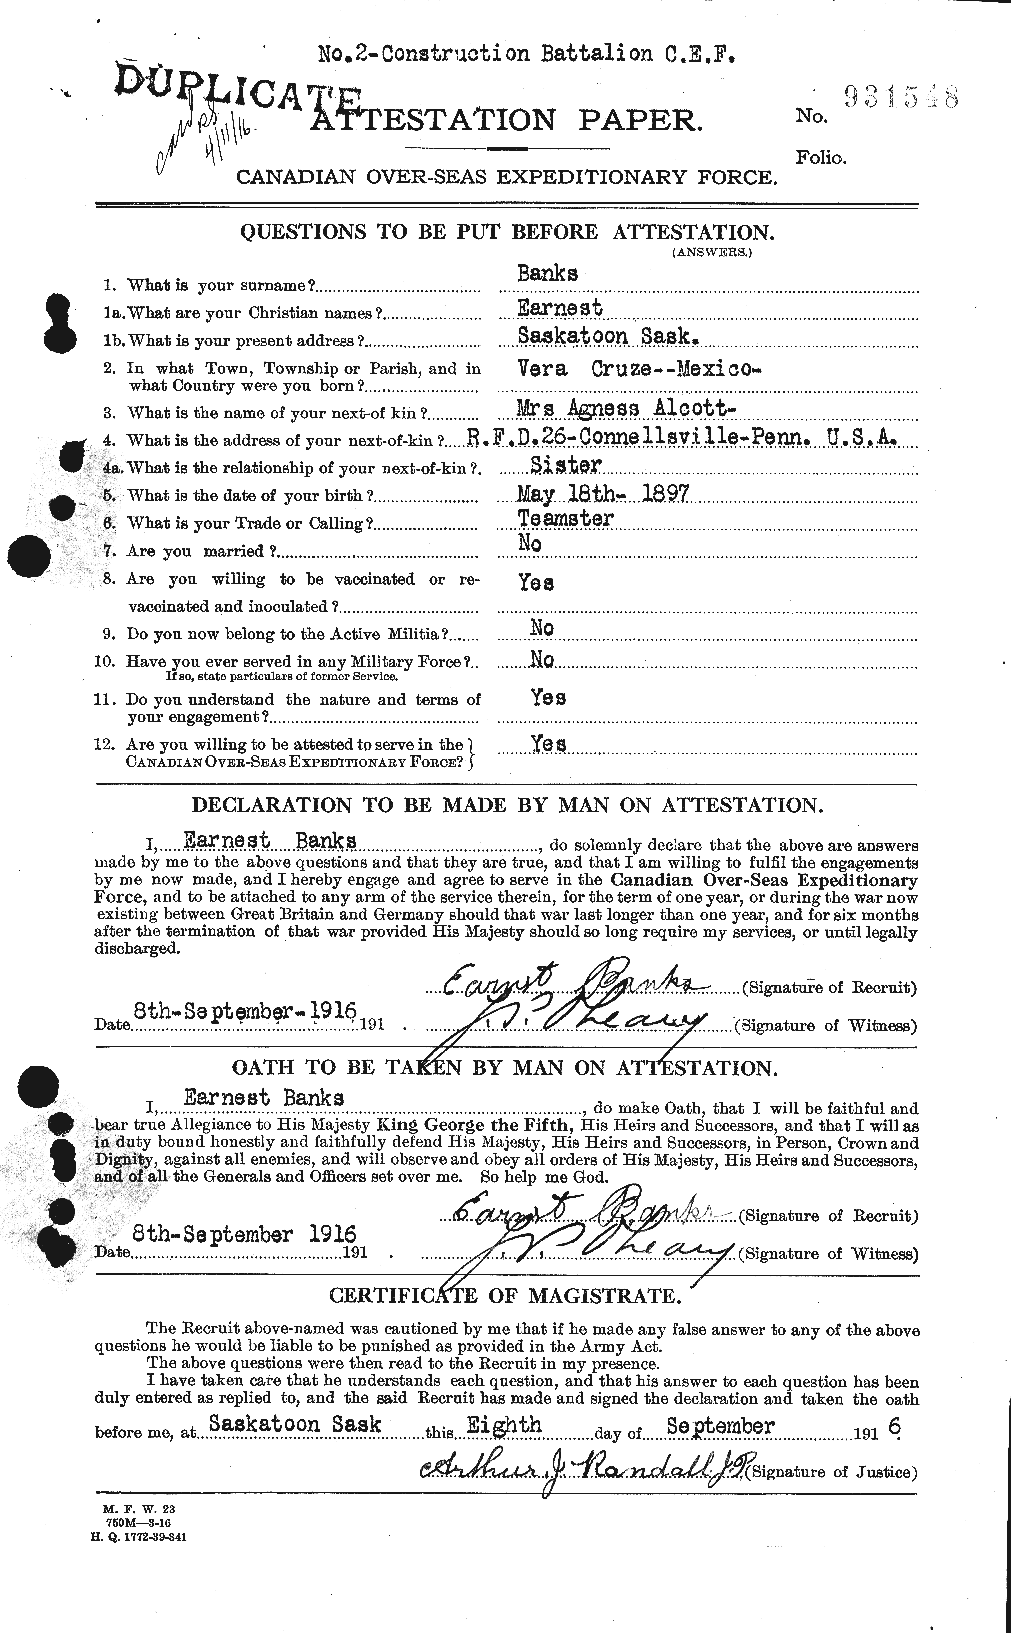 Dossiers du Personnel de la Première Guerre mondiale - CEC 219244a